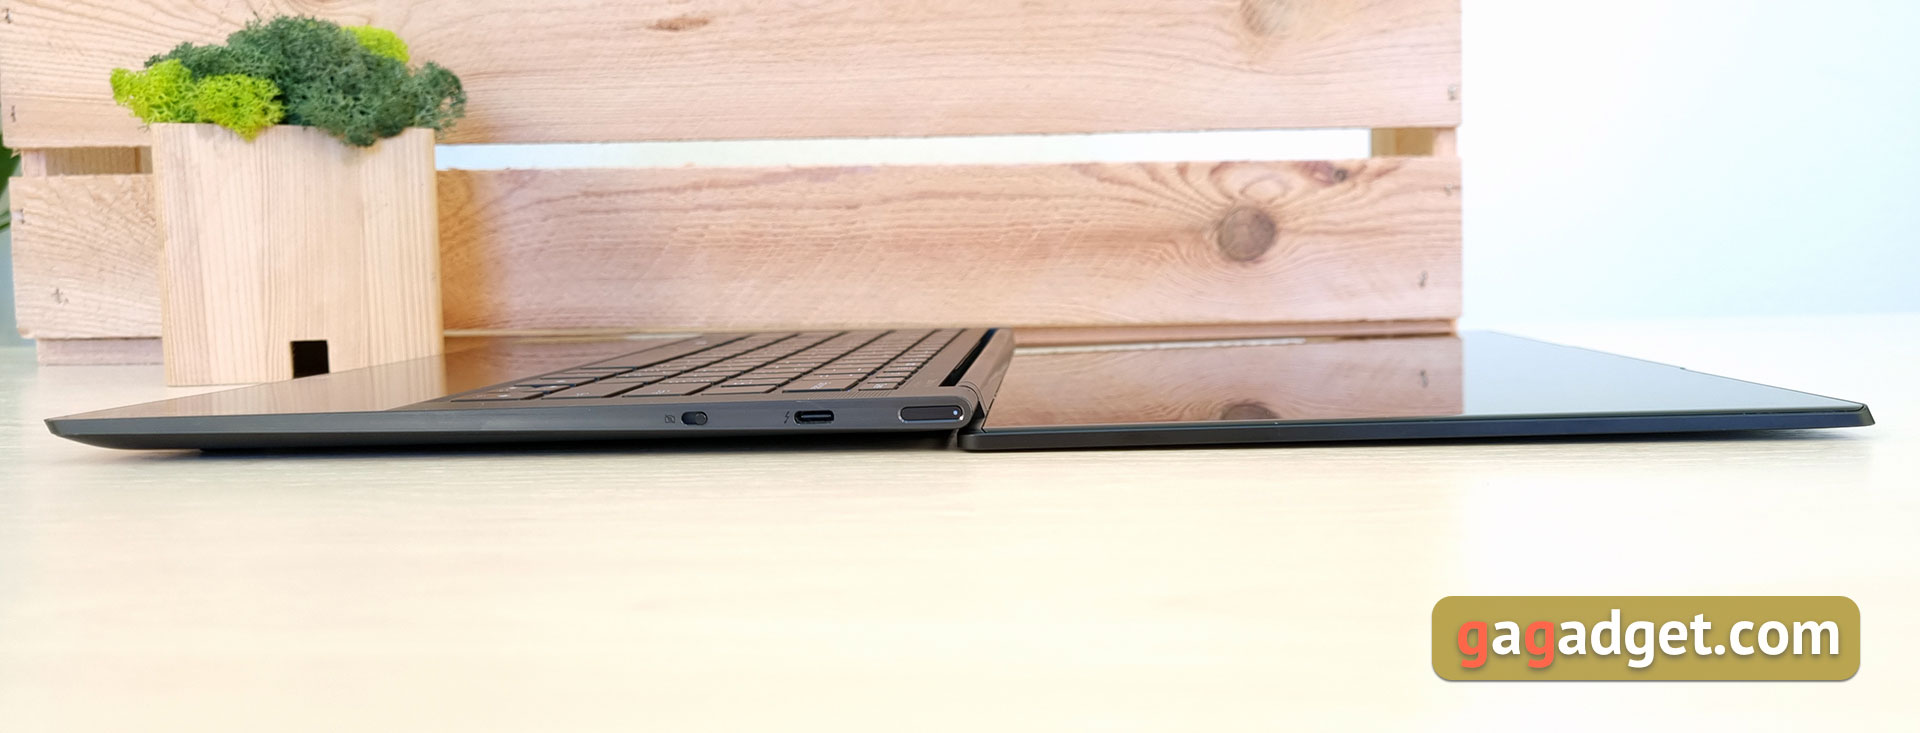 Lenovo Yoga Slim 9i Laptop Test-24